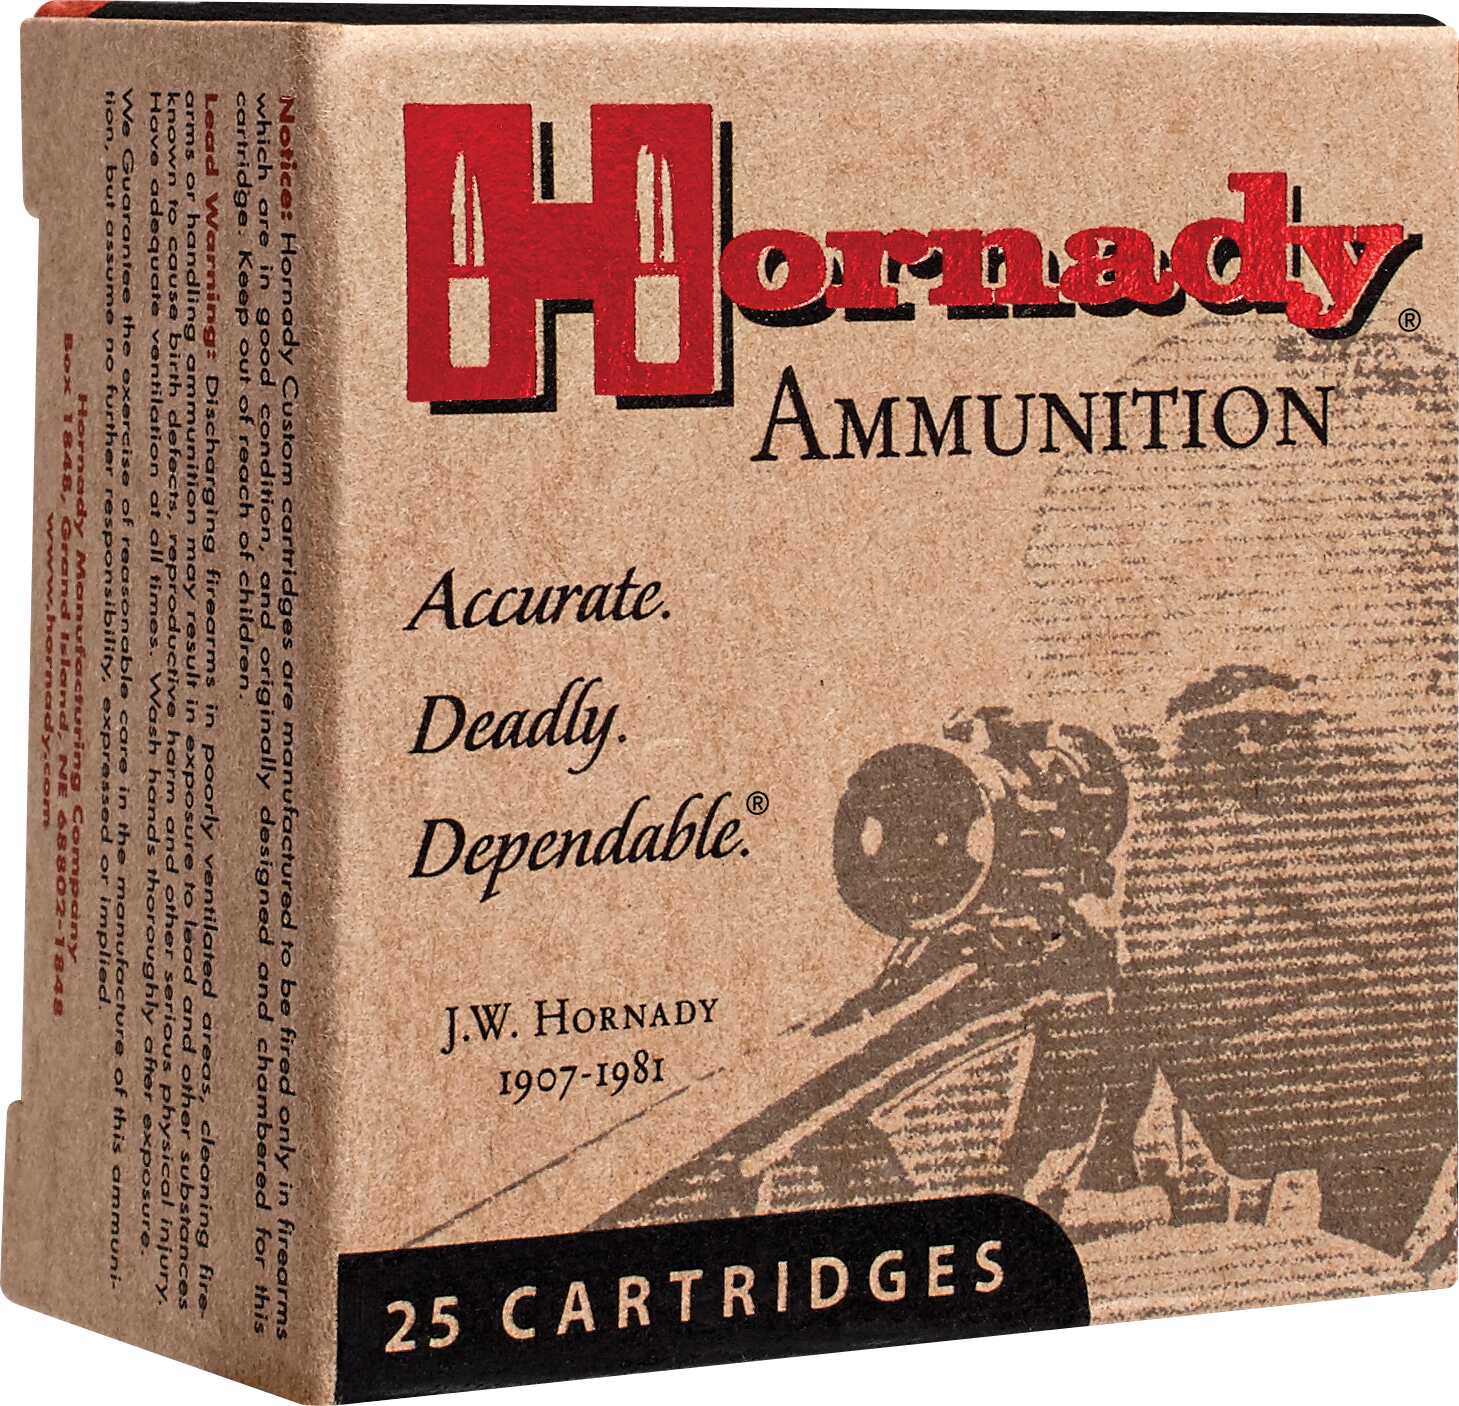 9mm Luger 124 Grain Hollow Point 25 Rounds Hornady Ammunition